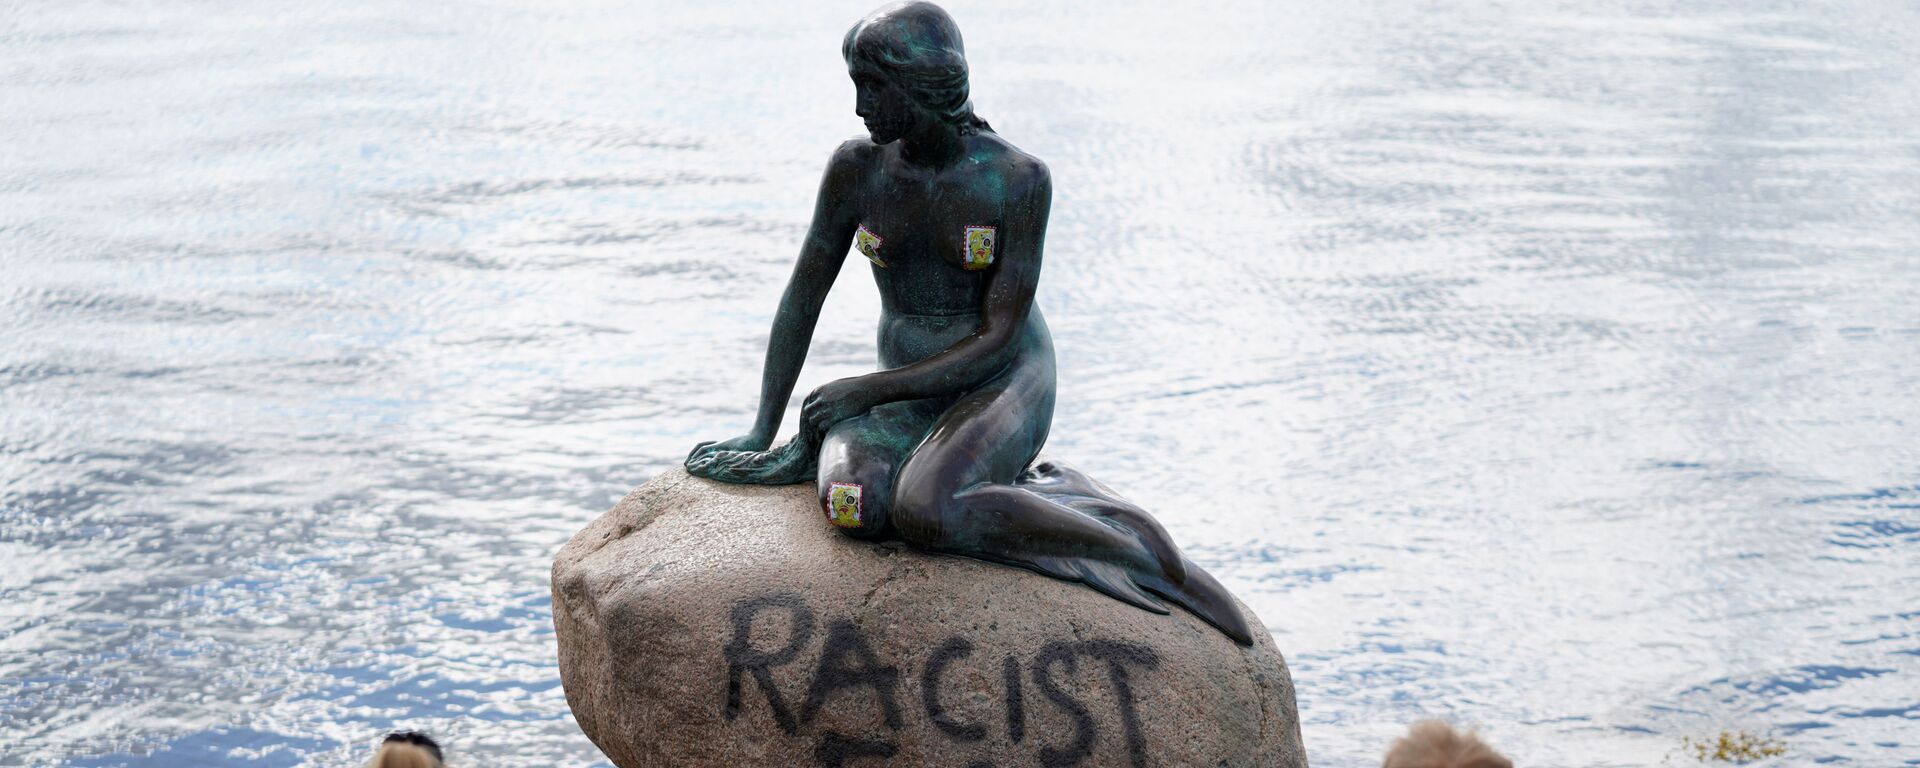 La estatua de la Sirenita en Copenhague con el lema de pez racista  - Sputnik Mundo, 1920, 03.07.2020